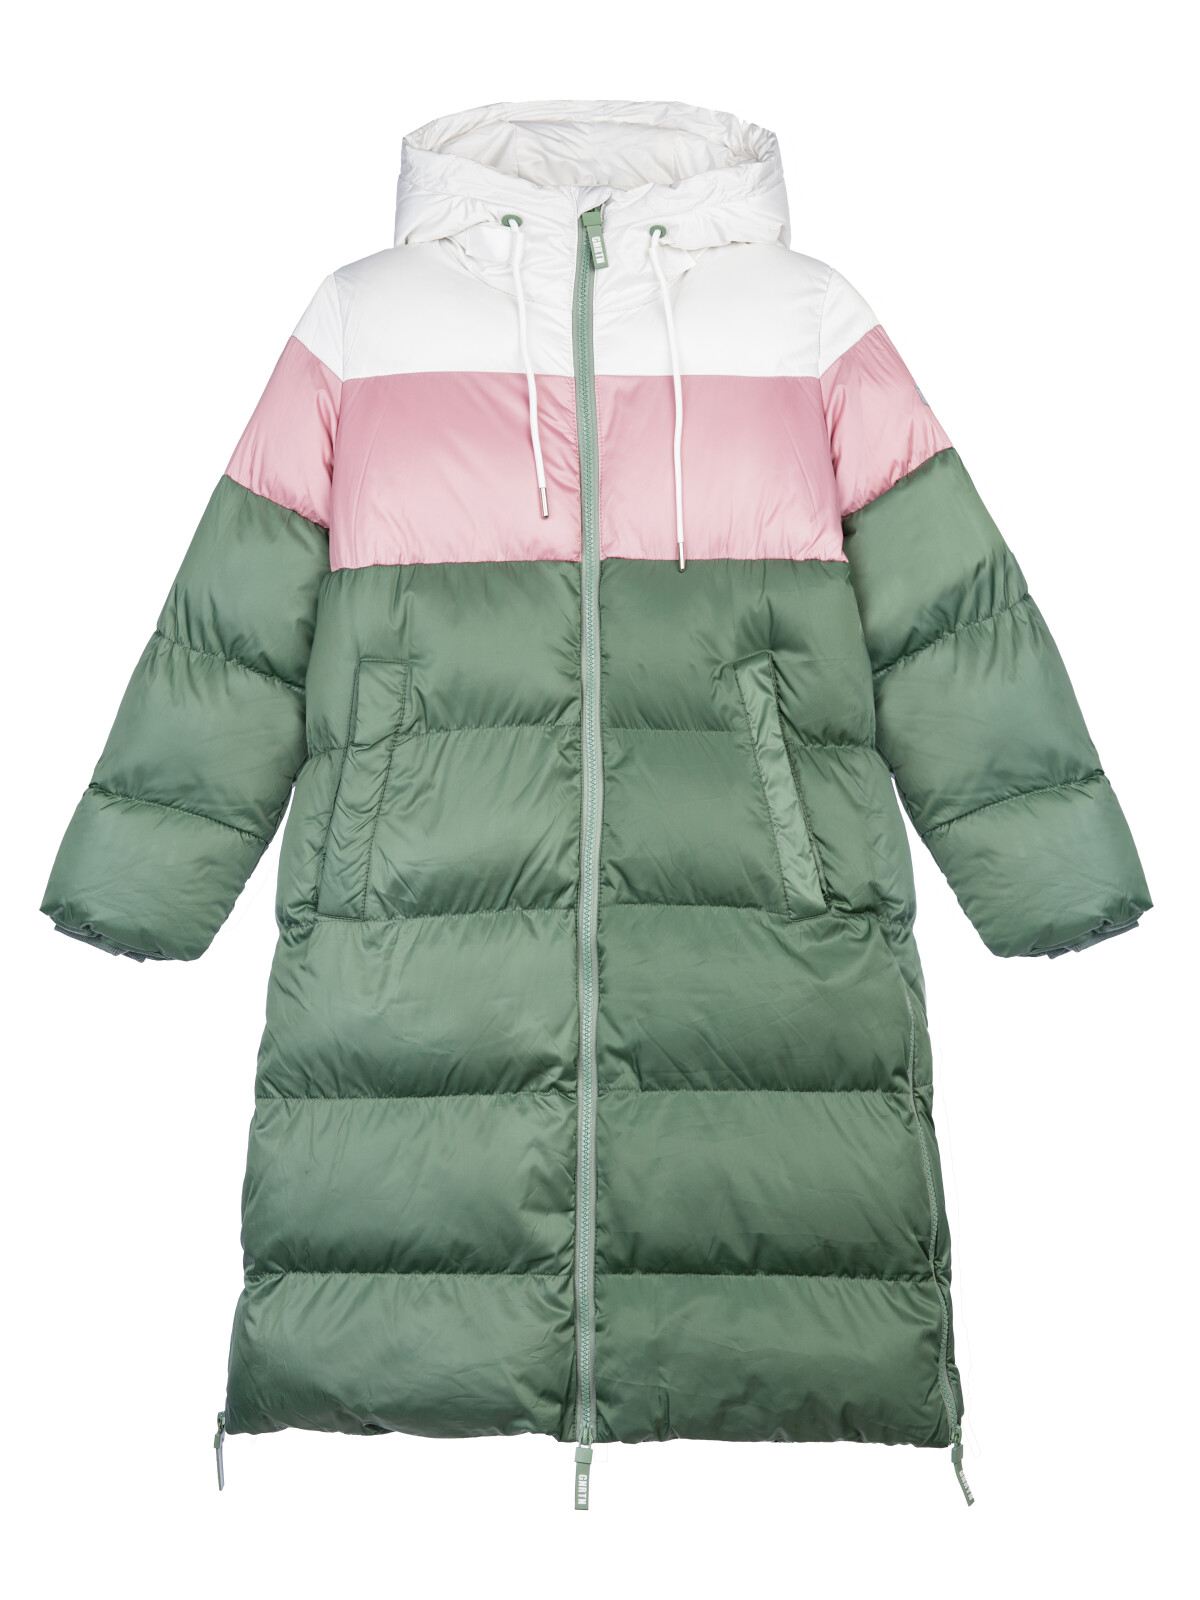 Пальто текстильное для девочек PlayToday, серебро,коричневый,темно-зеленый, 146 пуховик женский mountain hardwear ghost whisperer 2™ jacket коричневый